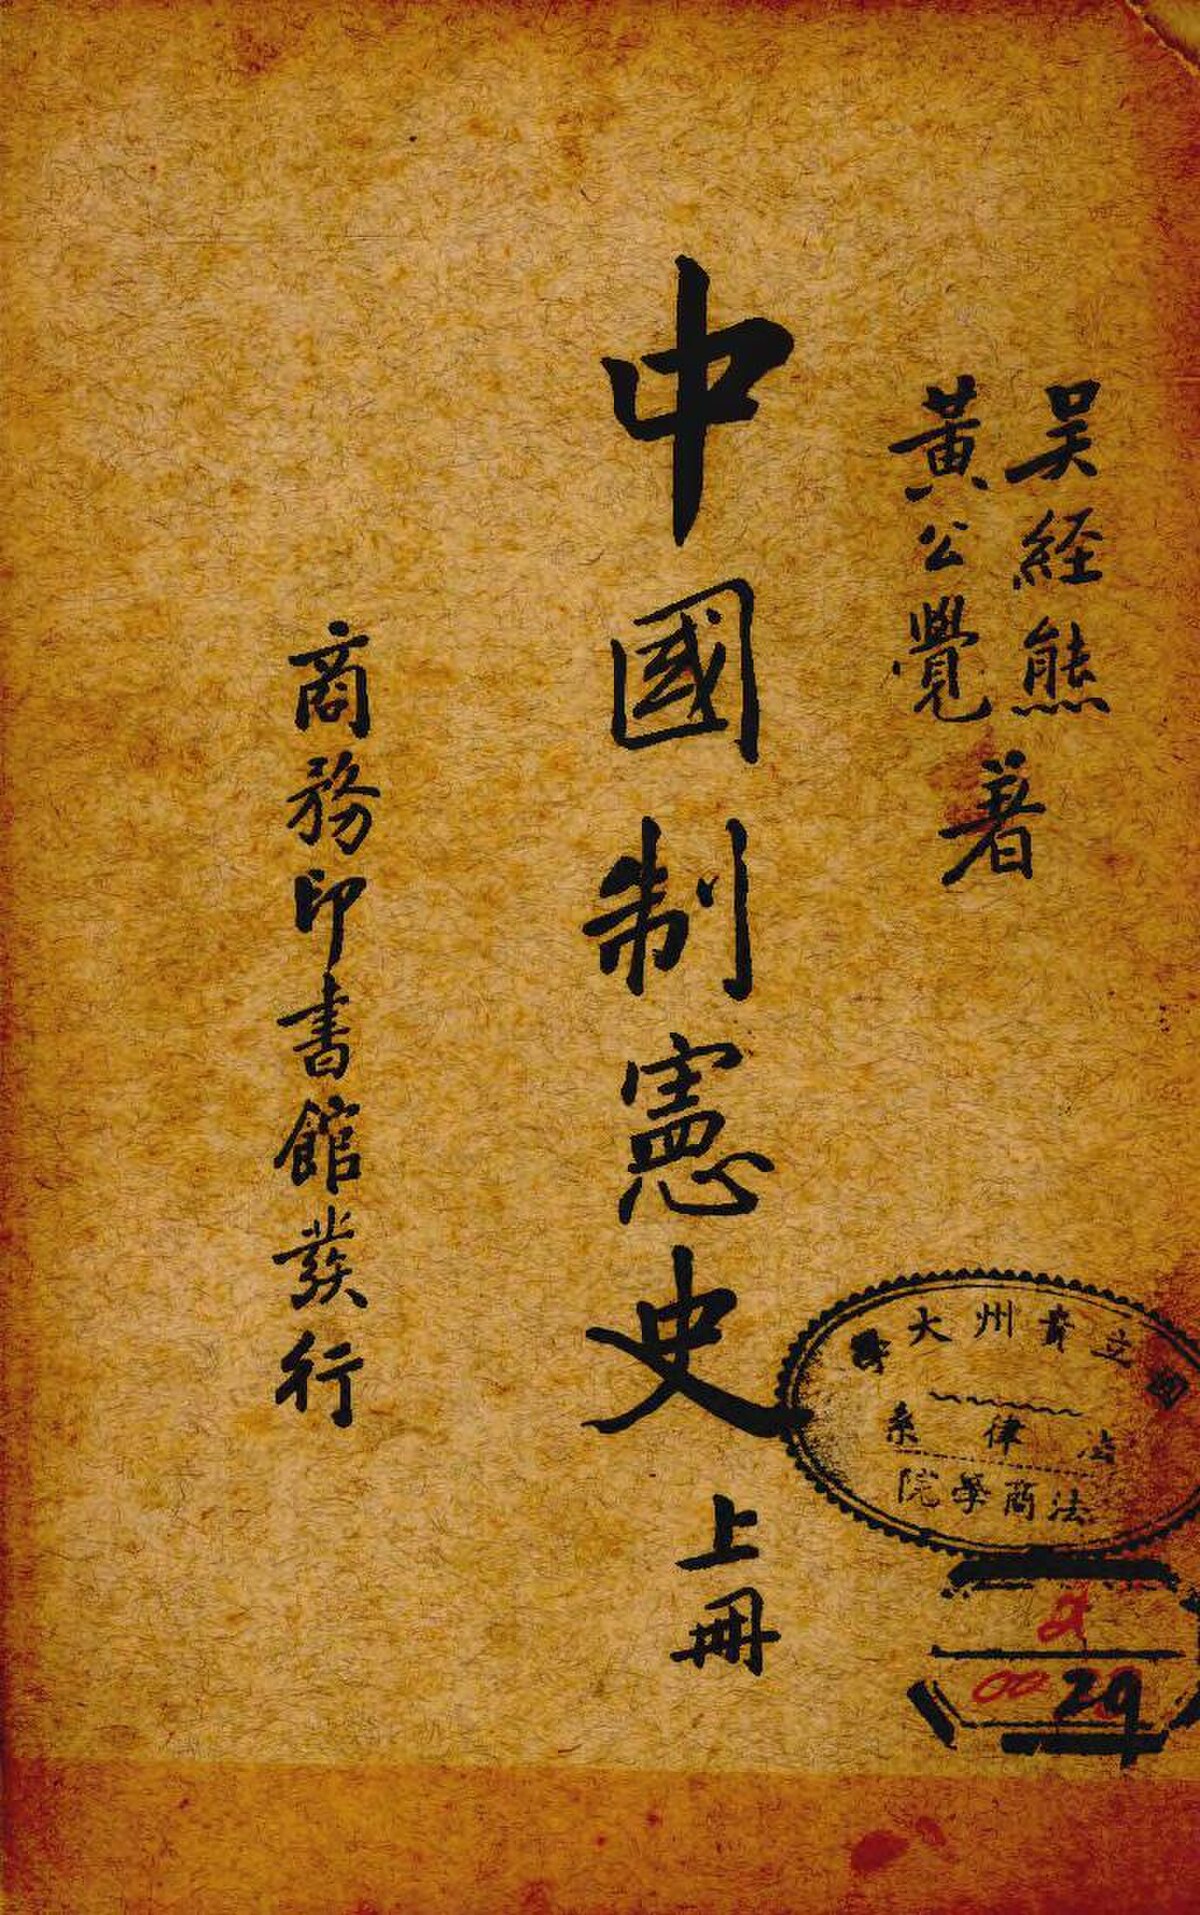 File:NLC511-004031011021836-6476 中國制憲史第1卷.pdf - Wikimedia 